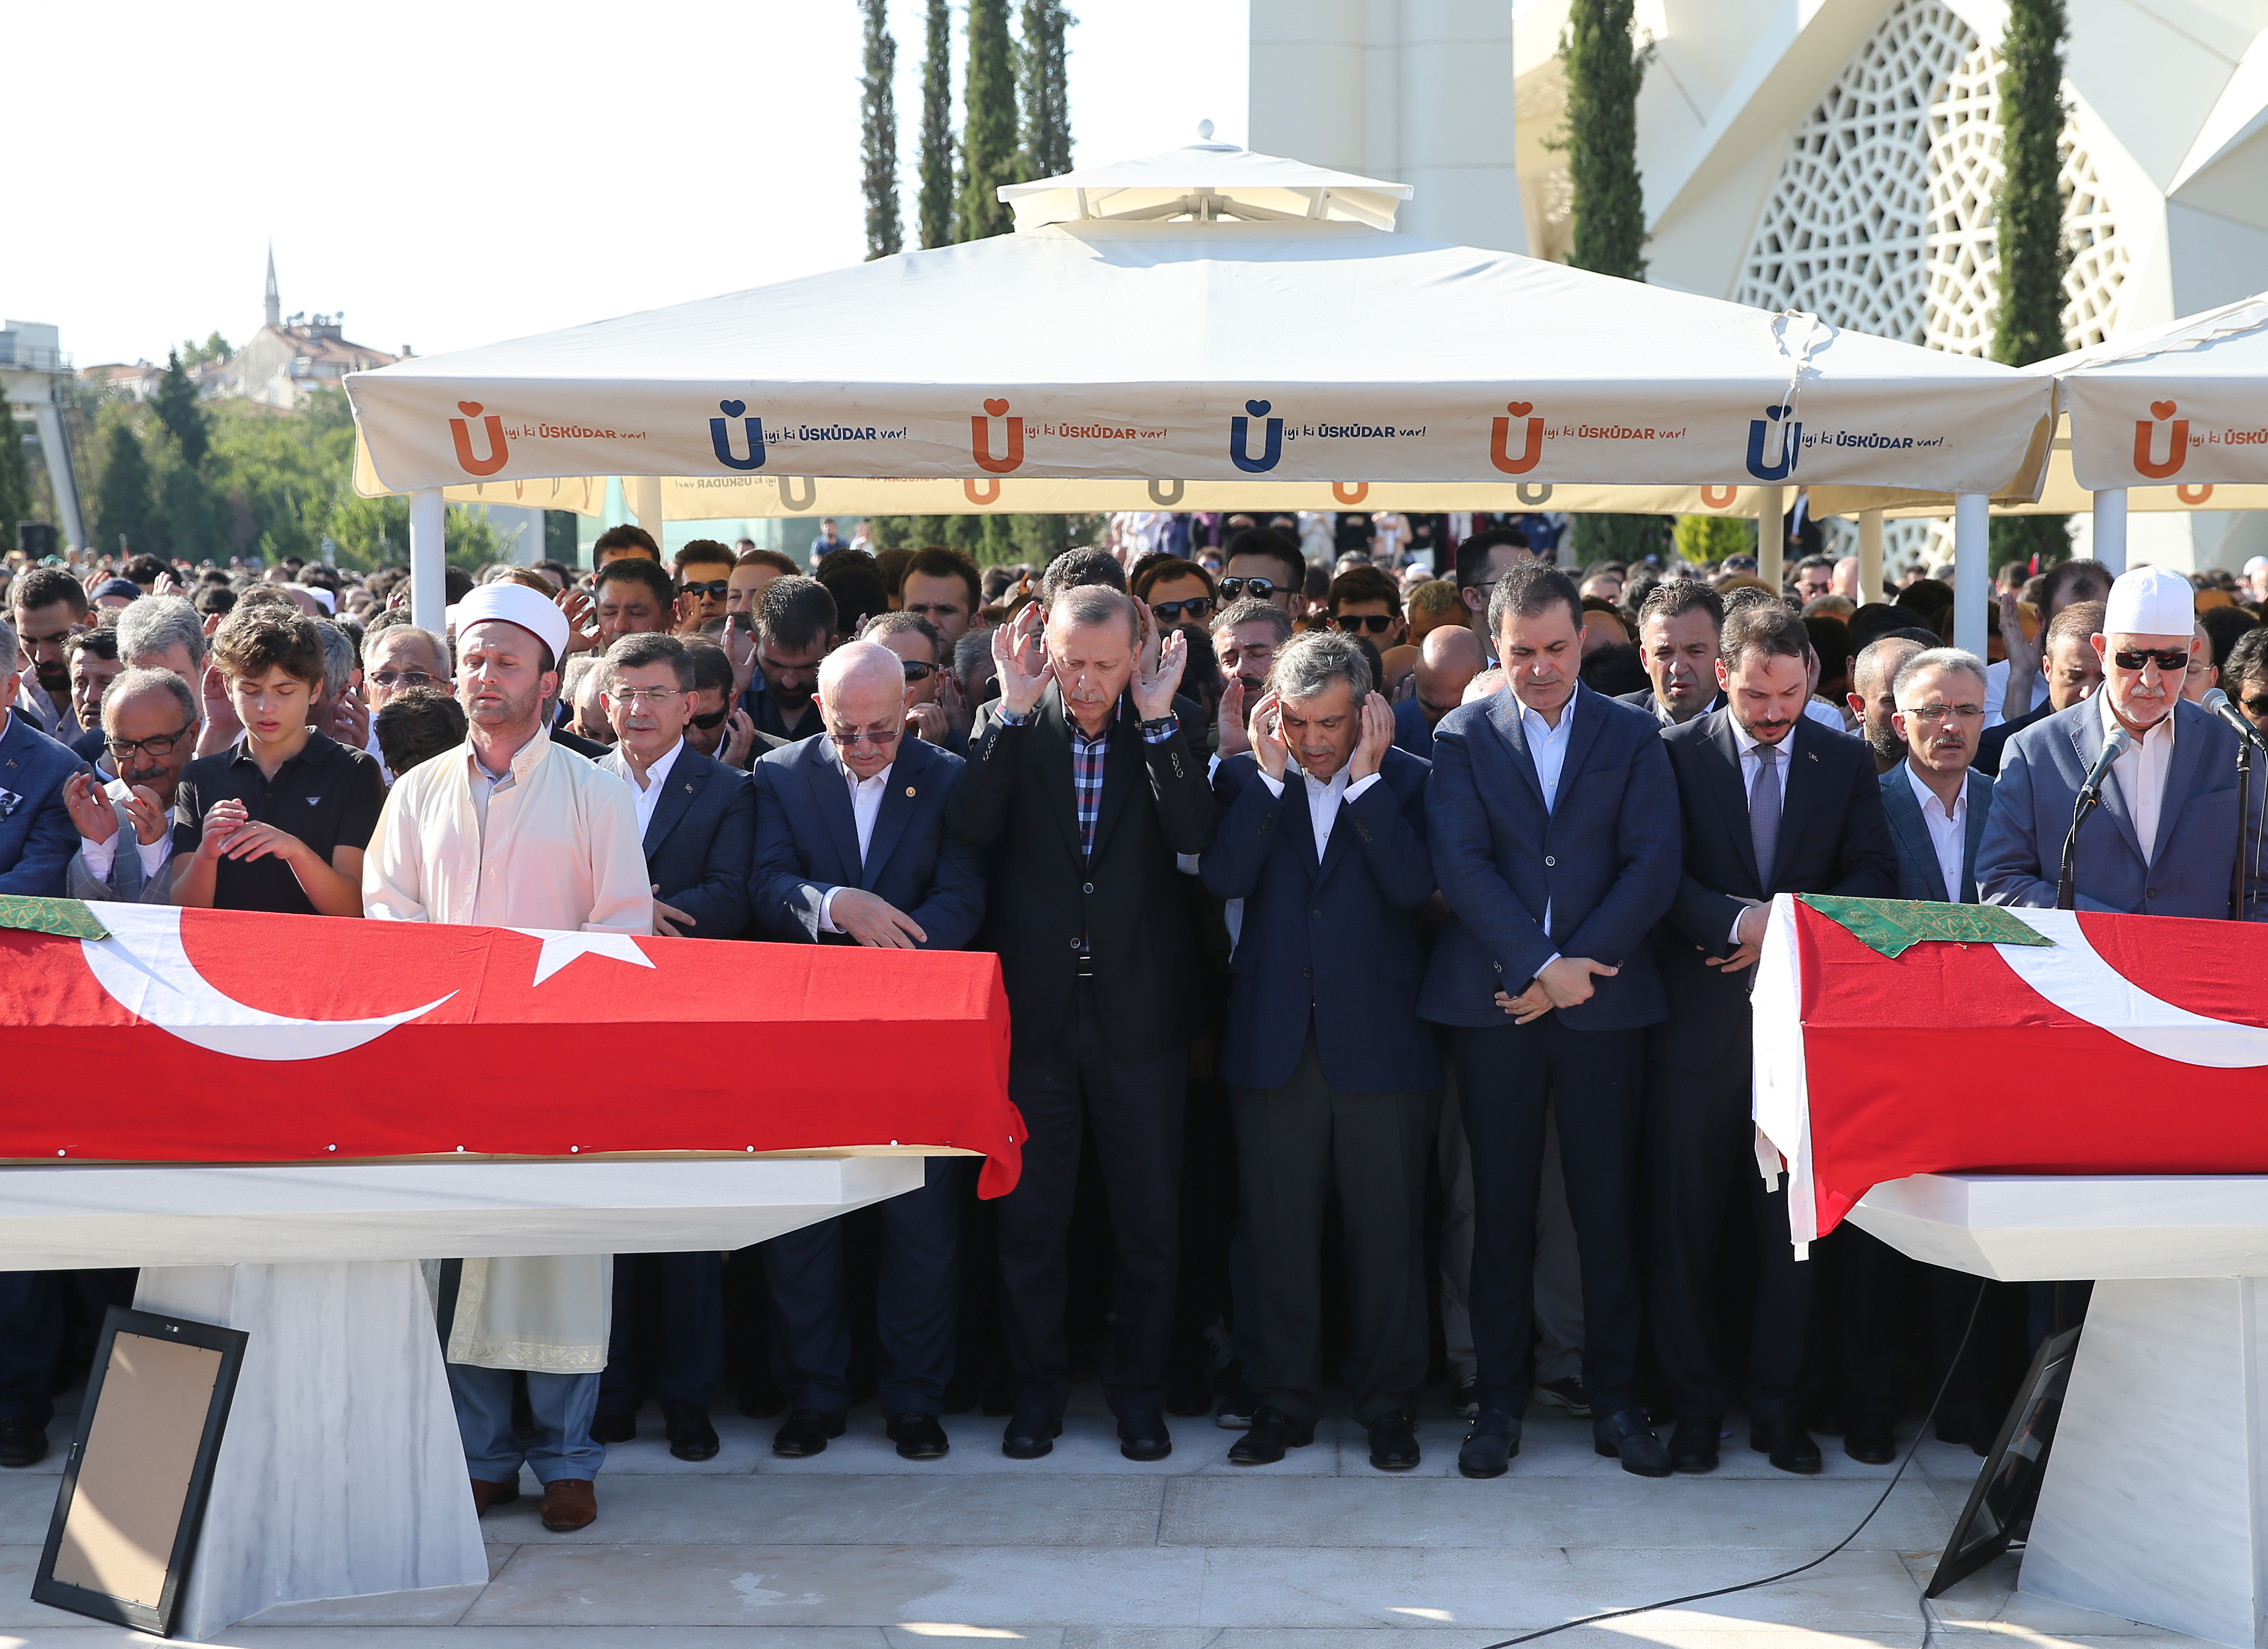 На церемонии прощания  присутствовали президент Эрдоган, 11 президент Абдулла Гюль, министры, депутаты, коллеги, родственники и большое количество граждан.